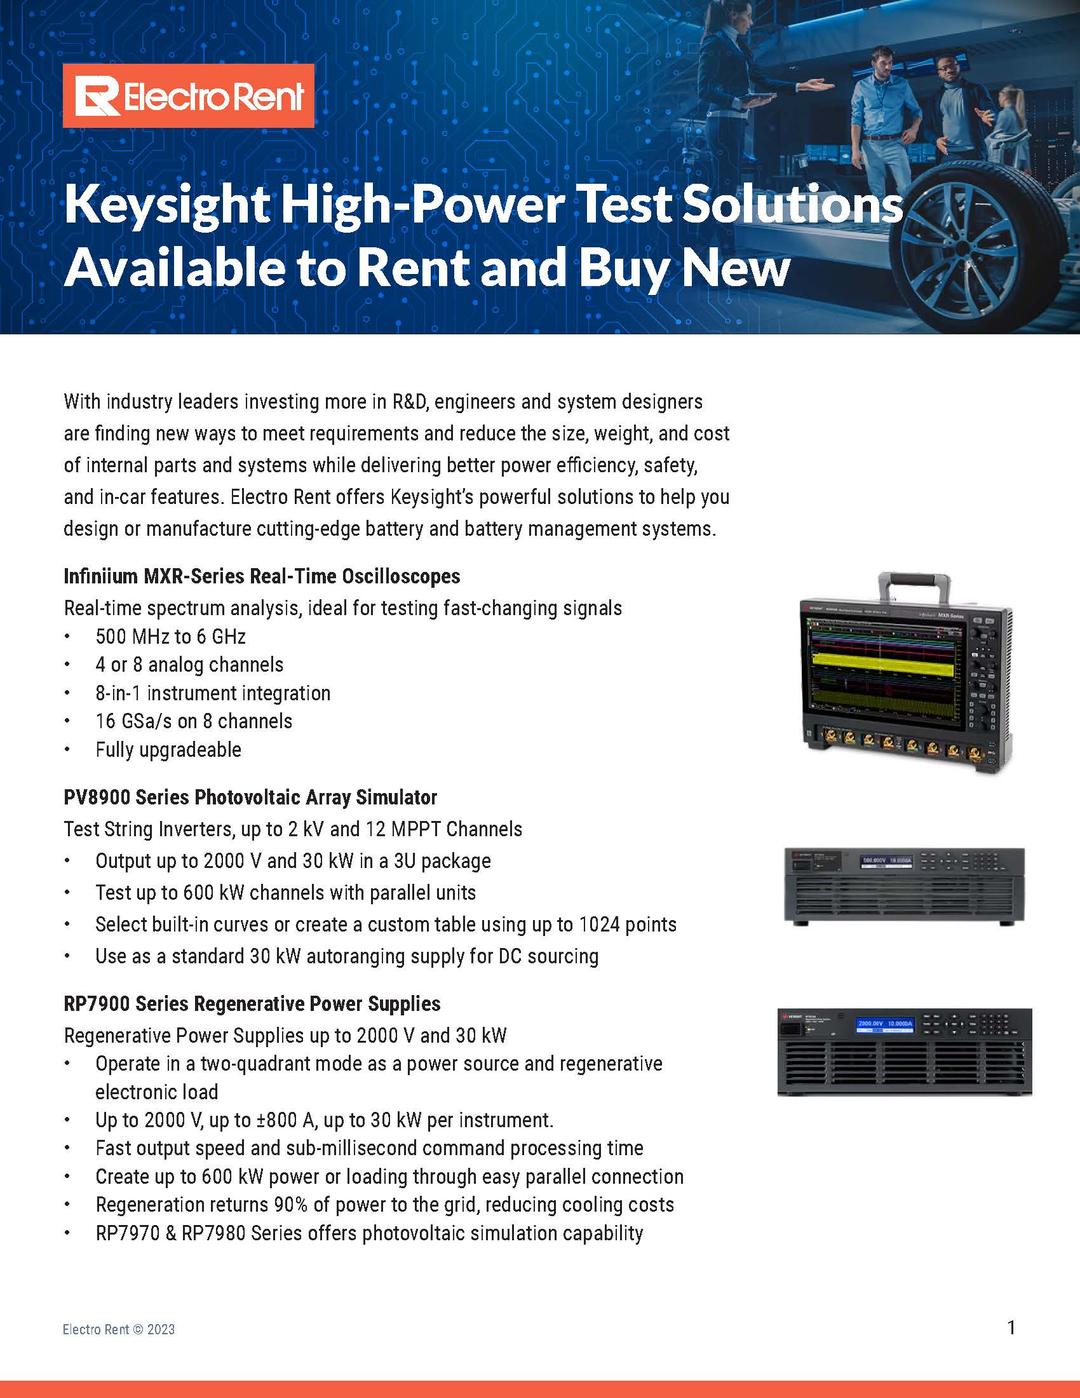 Keysight High-Power Test Solutions, imagen